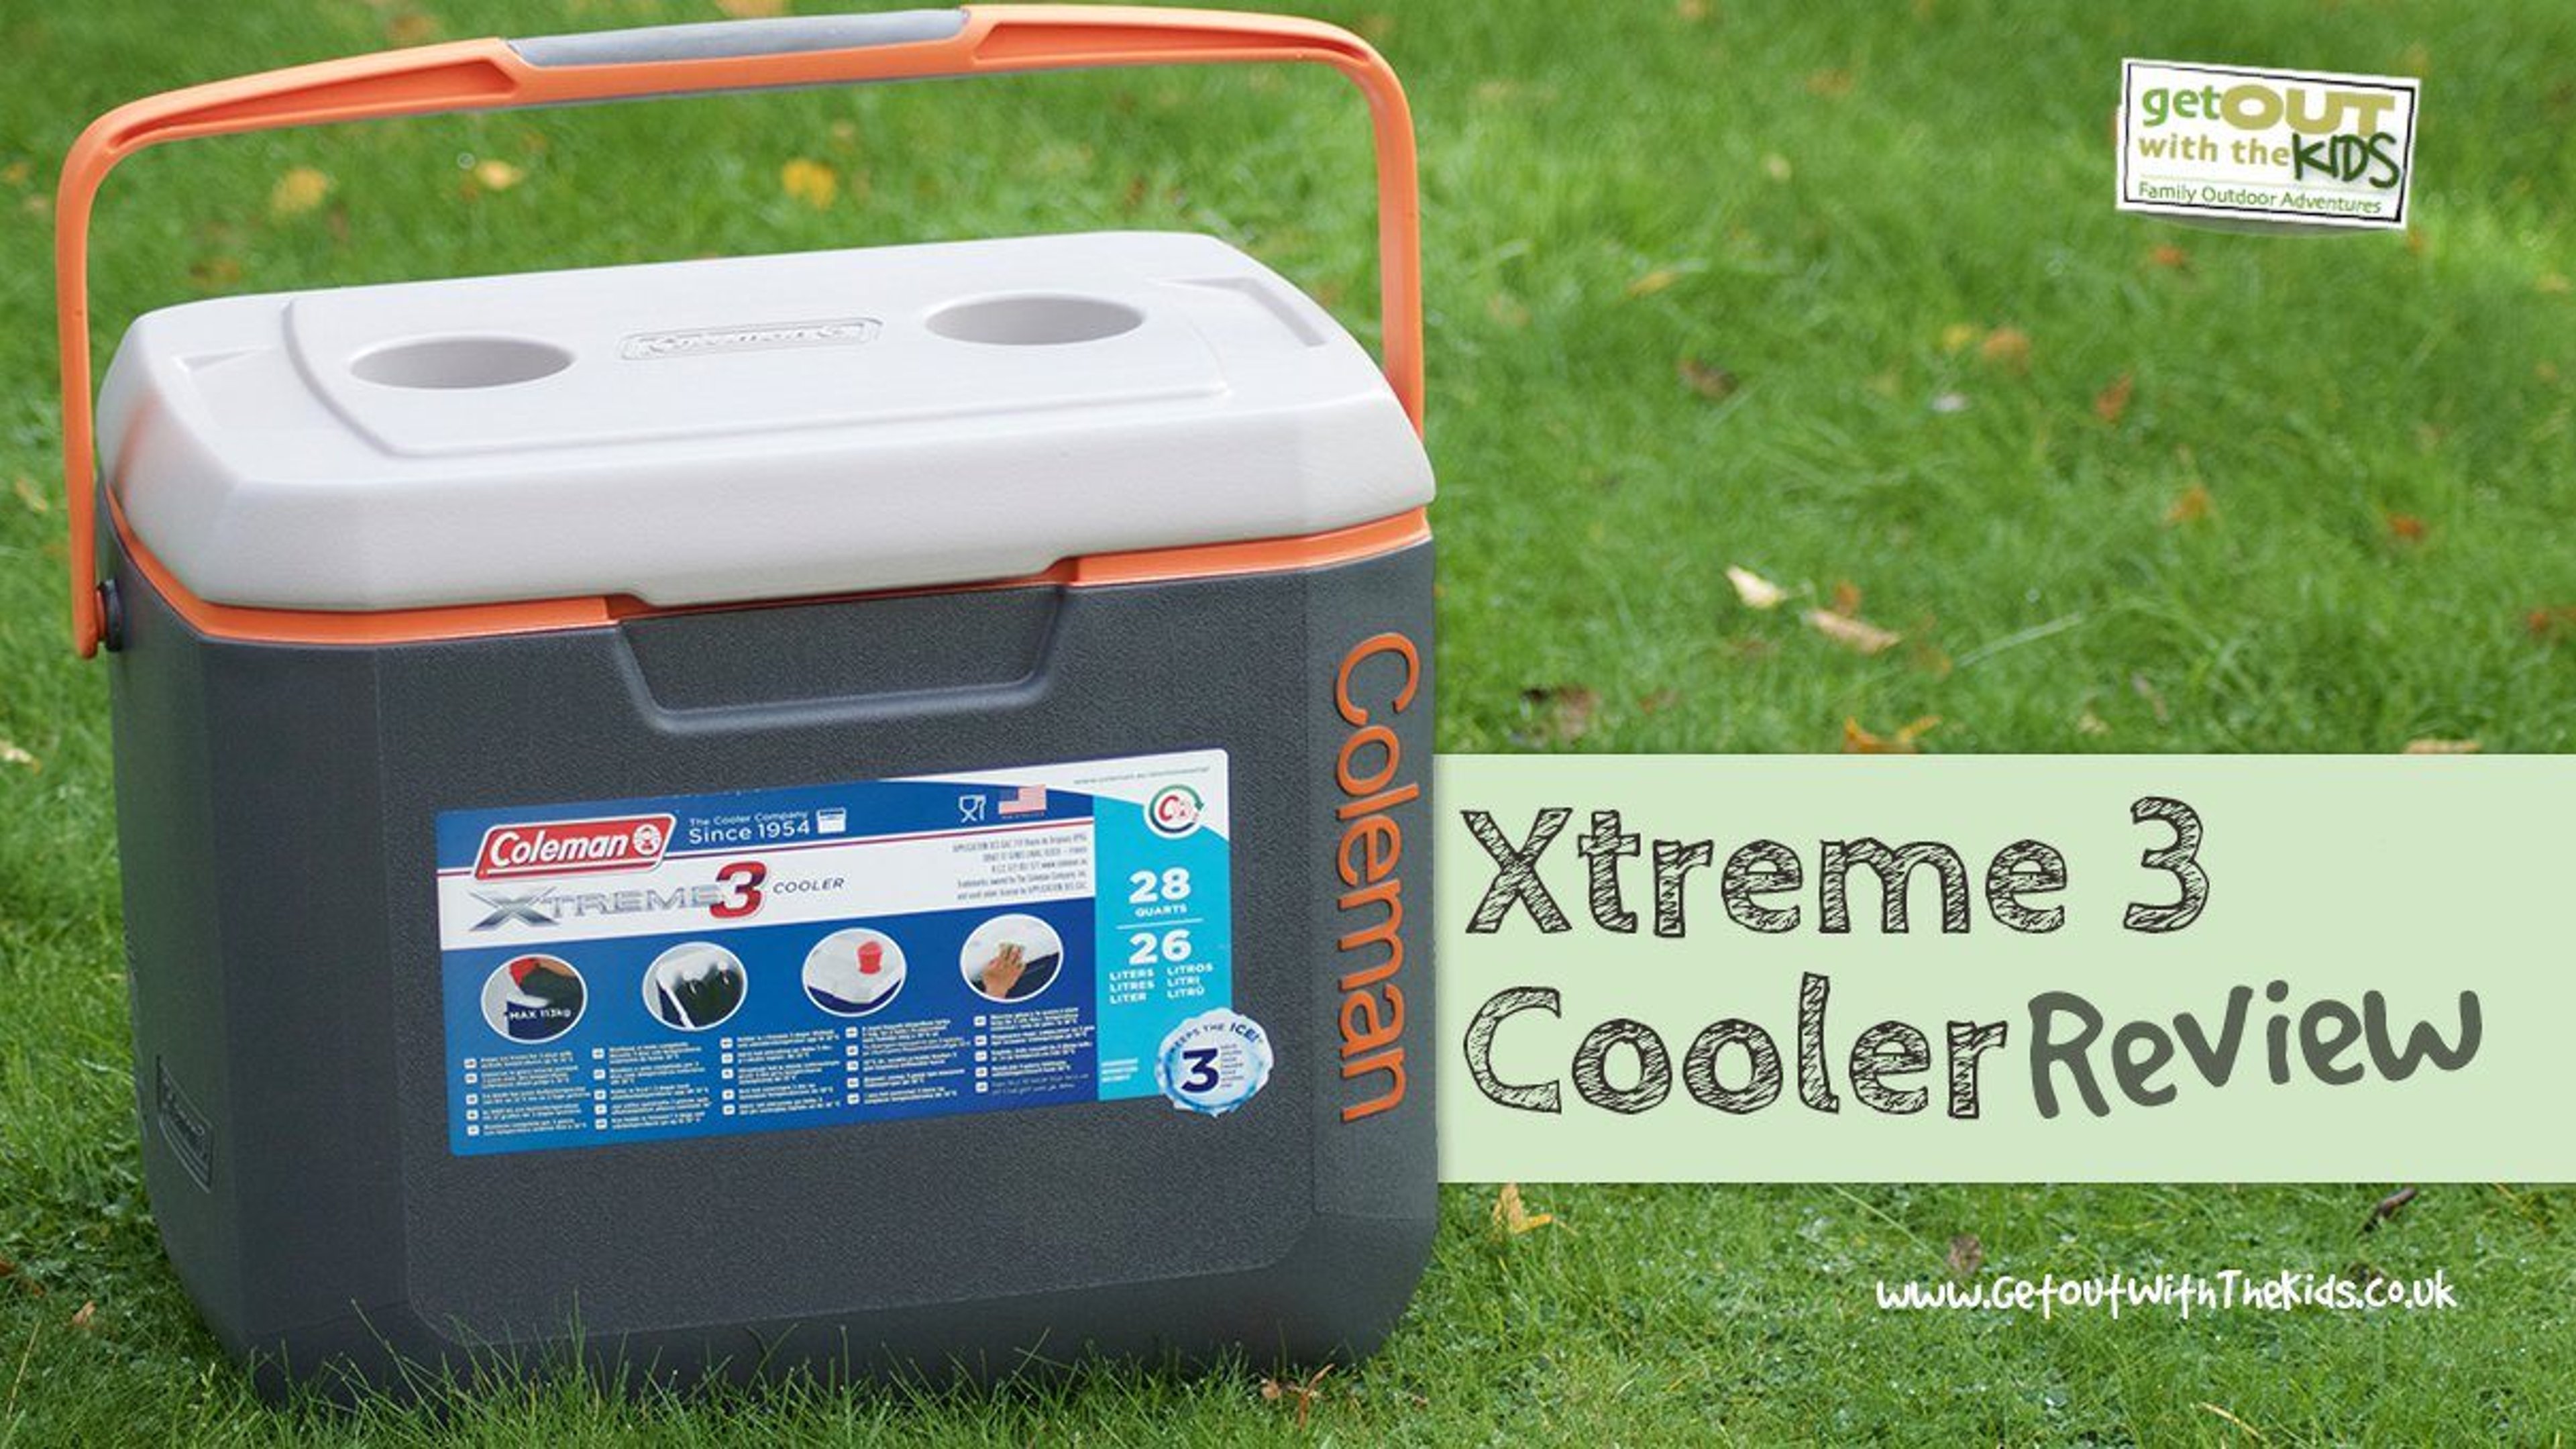 Coleman Xtreme 3 26L Cooler Review